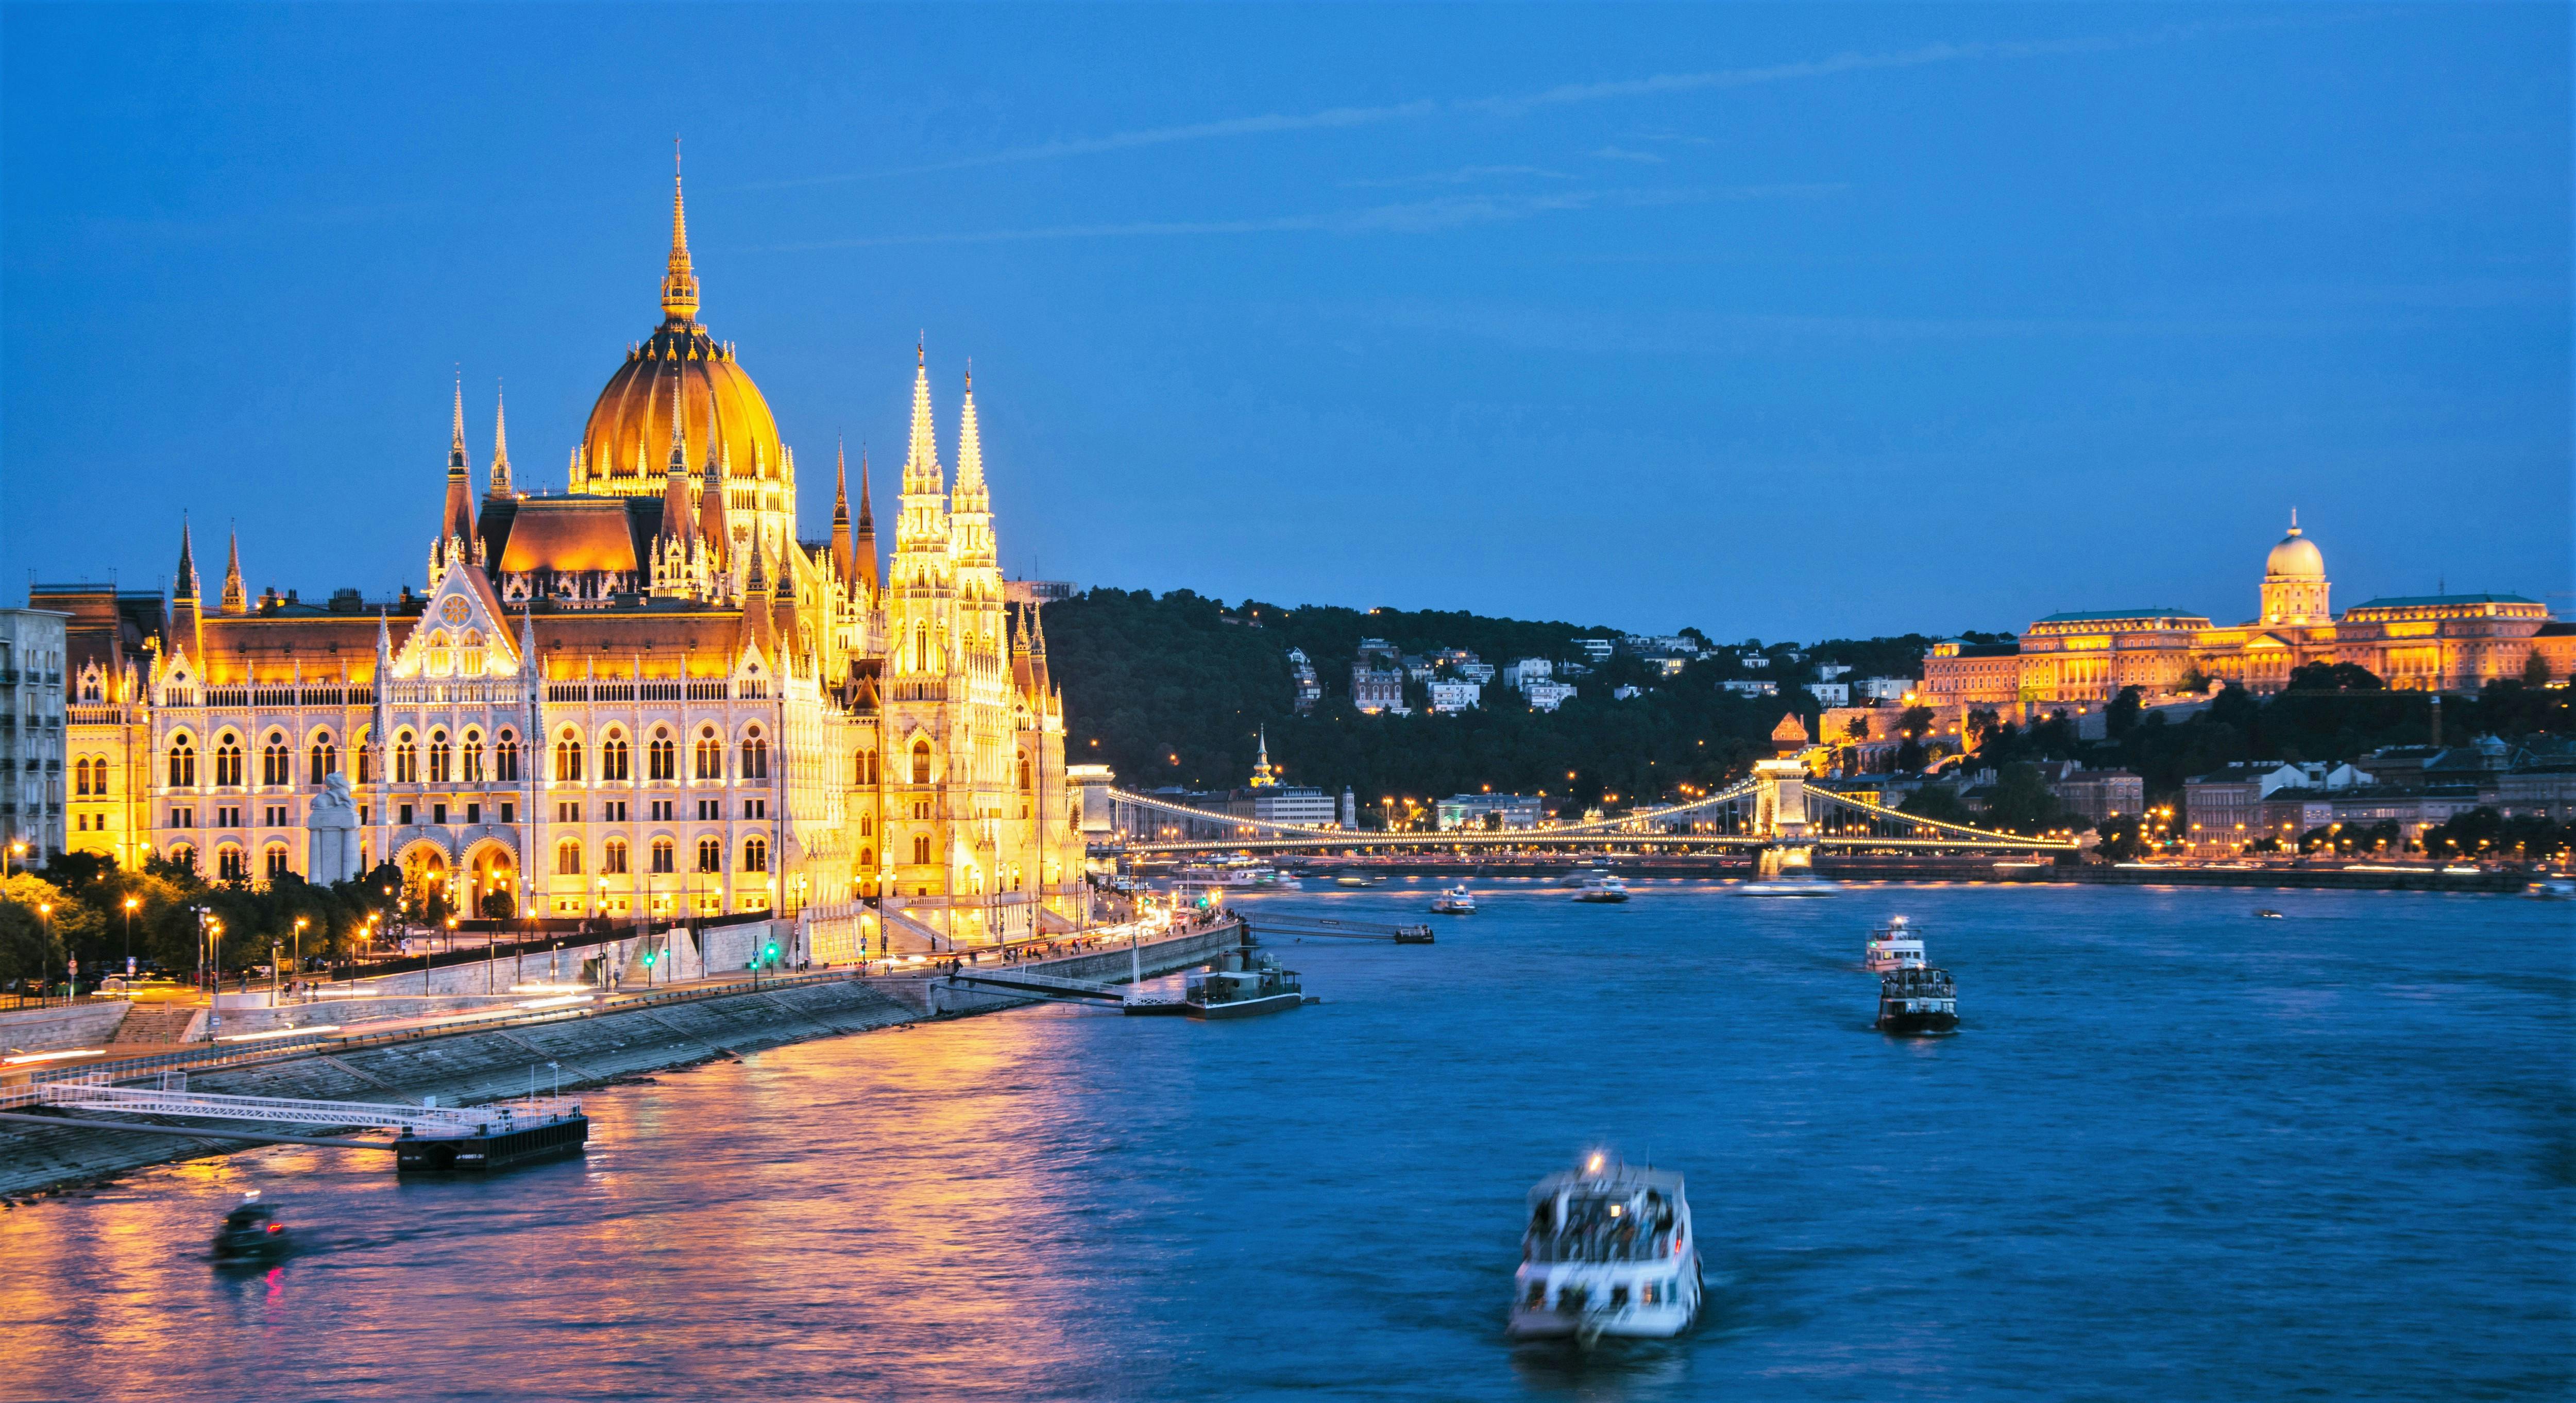 Laat diner diner cruise in Boedapest met live muziek